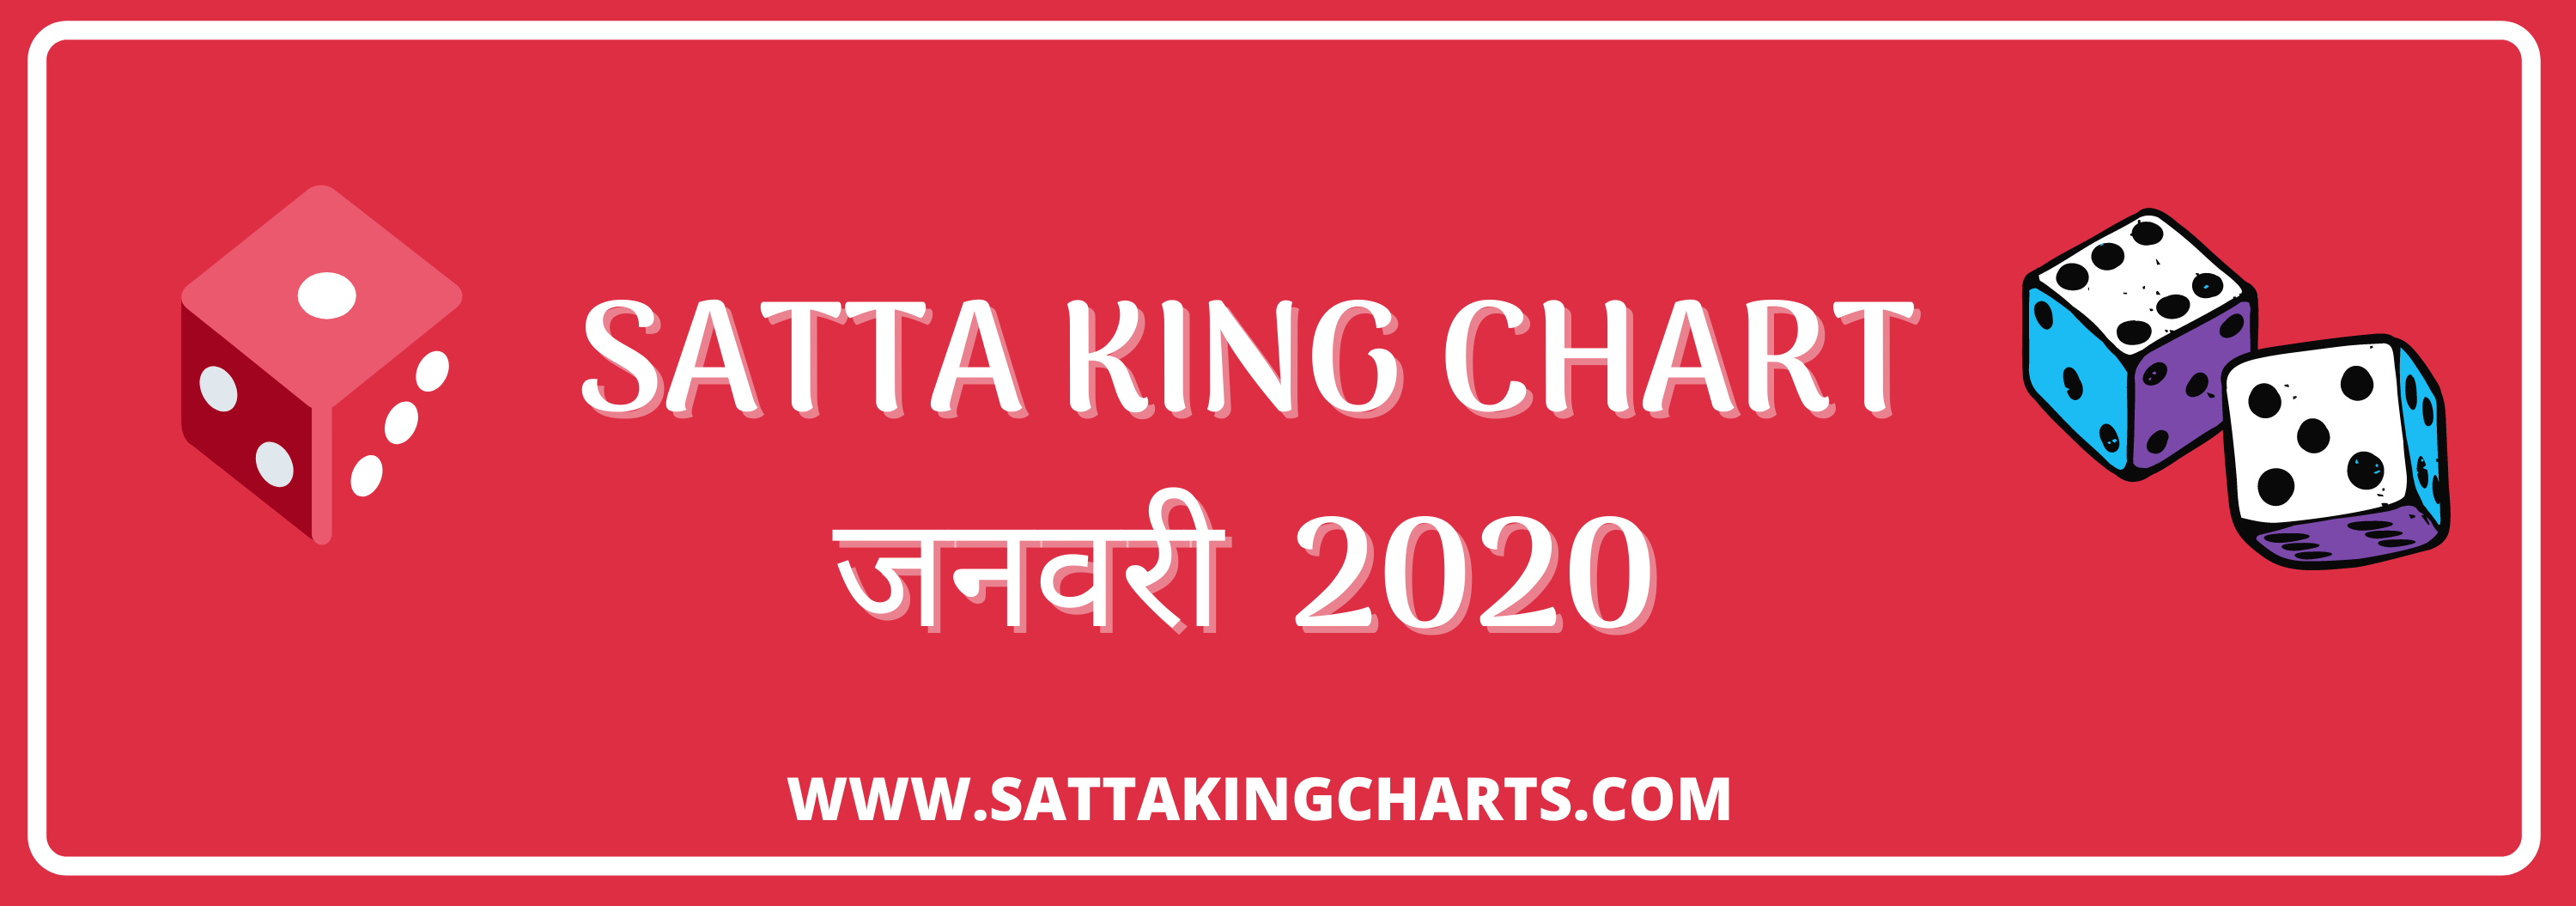 Satta Chart January Record [www..sattakingcharts.com}